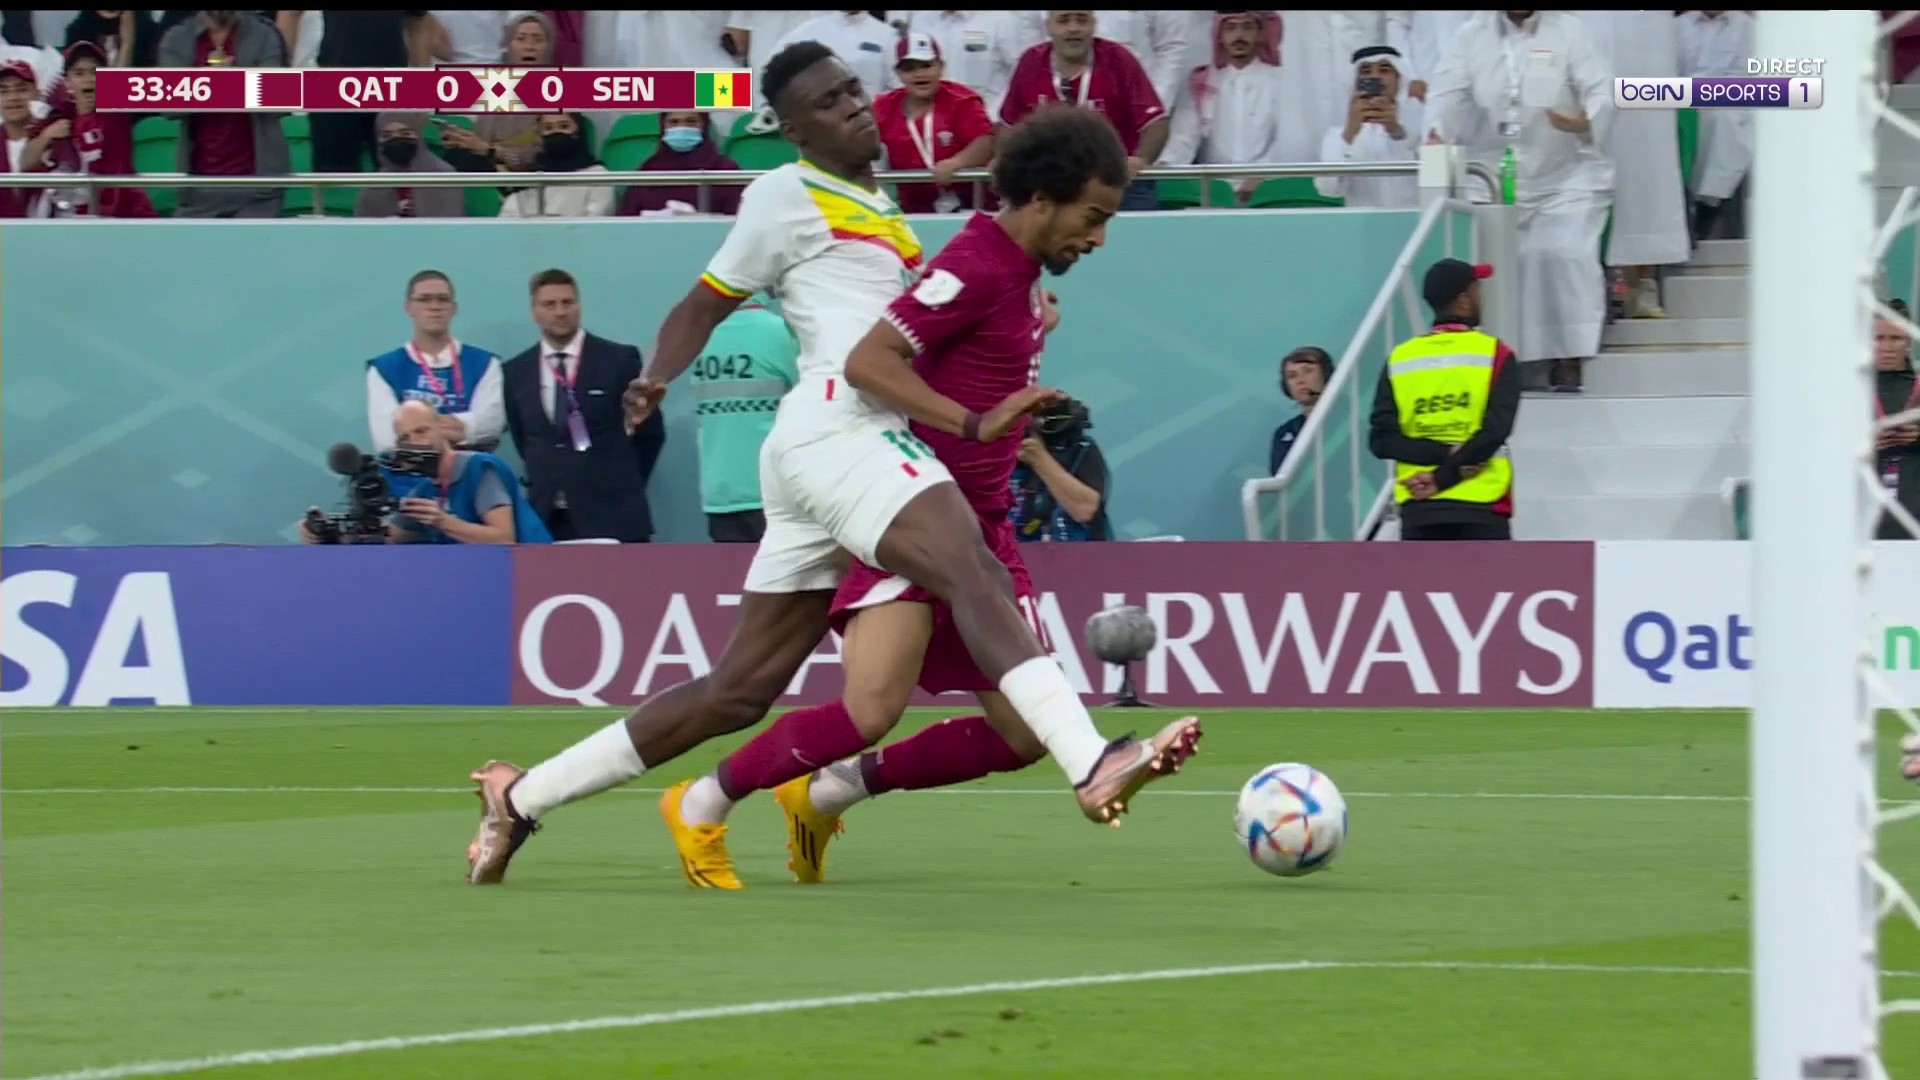 L'arbitre oublie un penalty évident au Qatar !